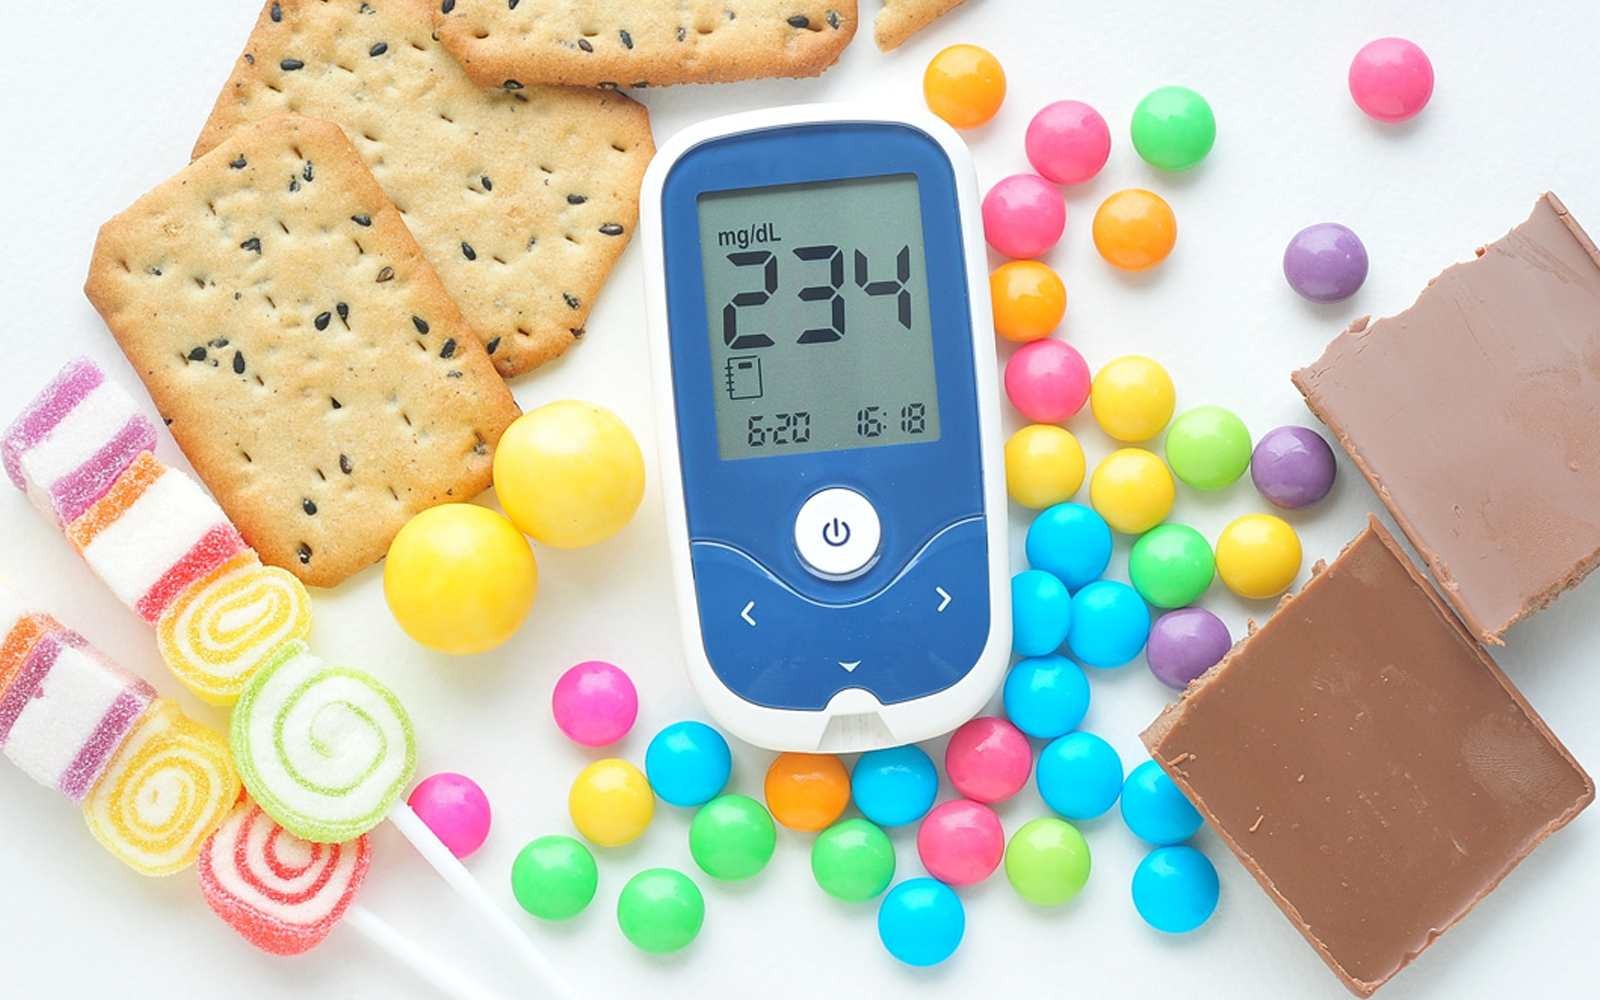 Sudah Minum Obat Diabetes tapi Gula Darah Tetap Tinggi, Apa yang Salah?